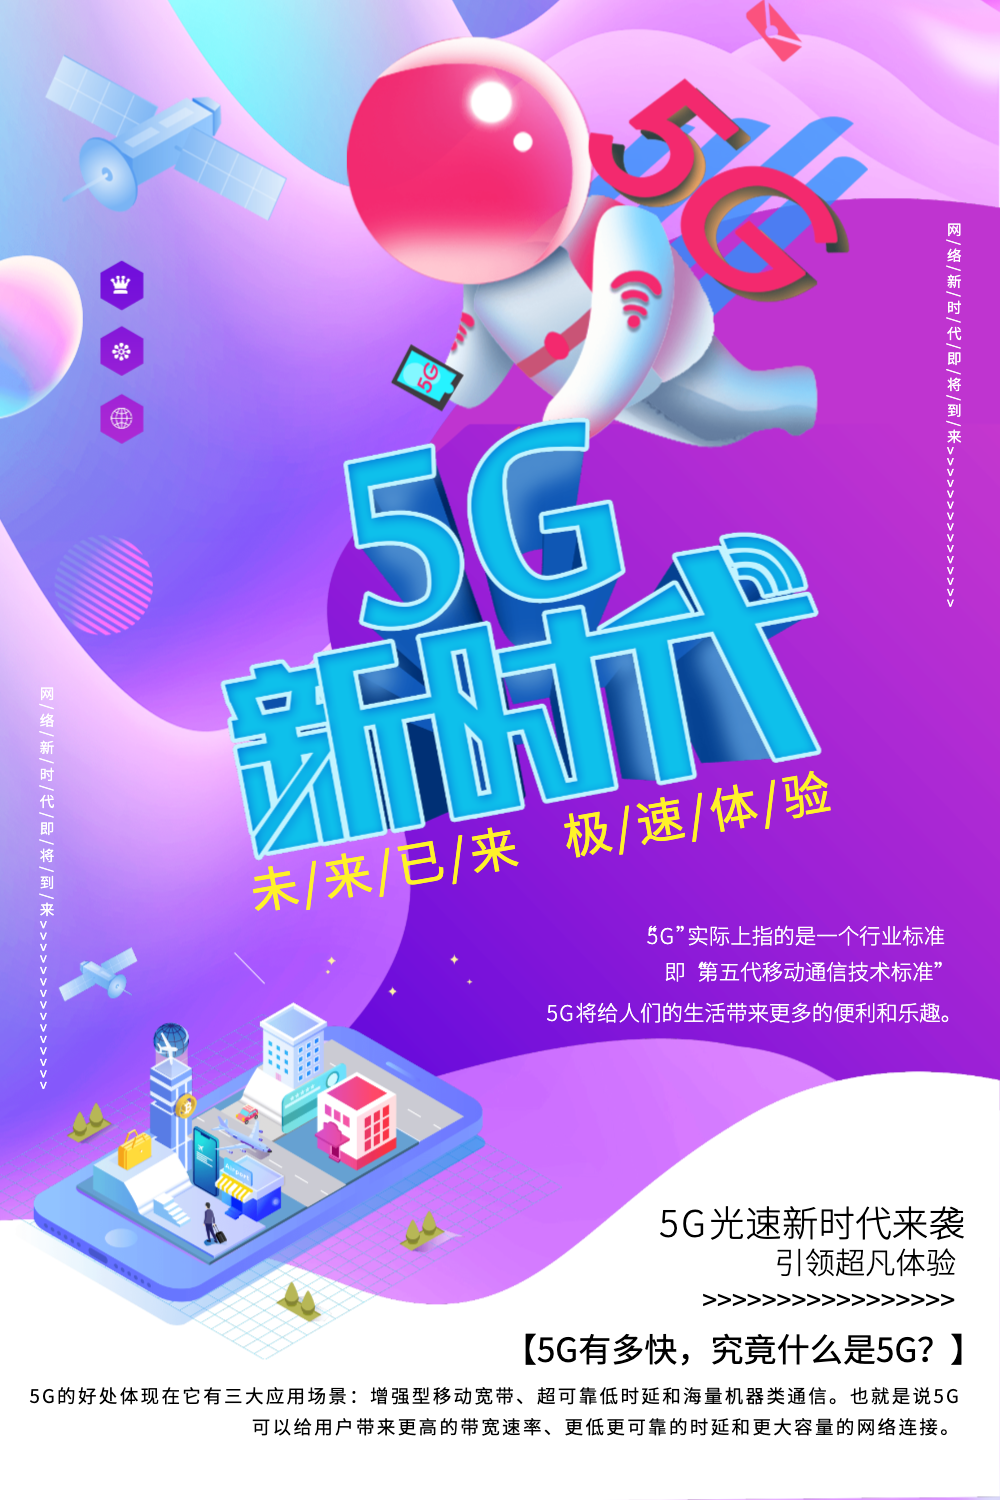 5G 网络营销机遇：速度、互动与精准营销的新时代  第8张